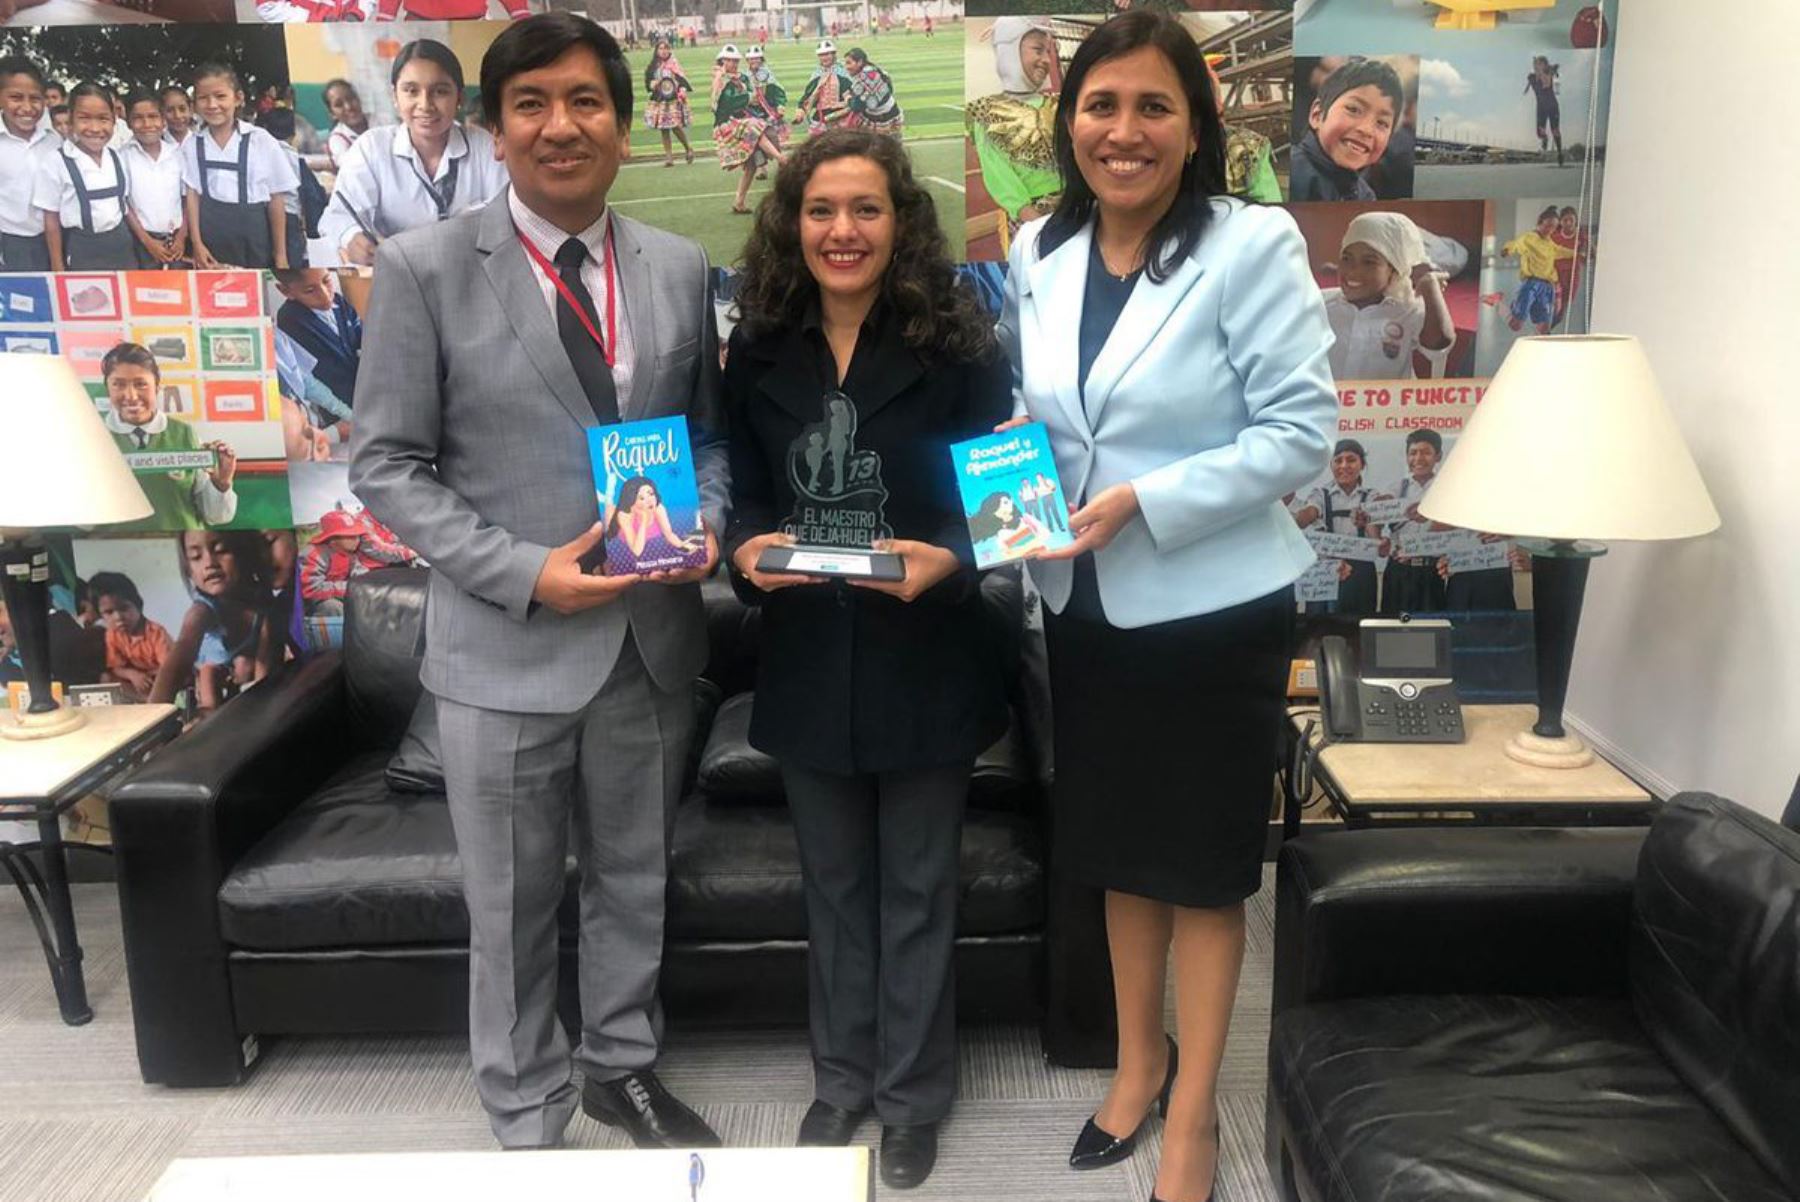 Ministerio de Educación otorgó reconocimiento a docente Melissa Mendieta que ganó premio "Maestro que deja huella" con mejora de prácticas pedagógicas de estudiantes de Loreto. ANDINA/Difusión